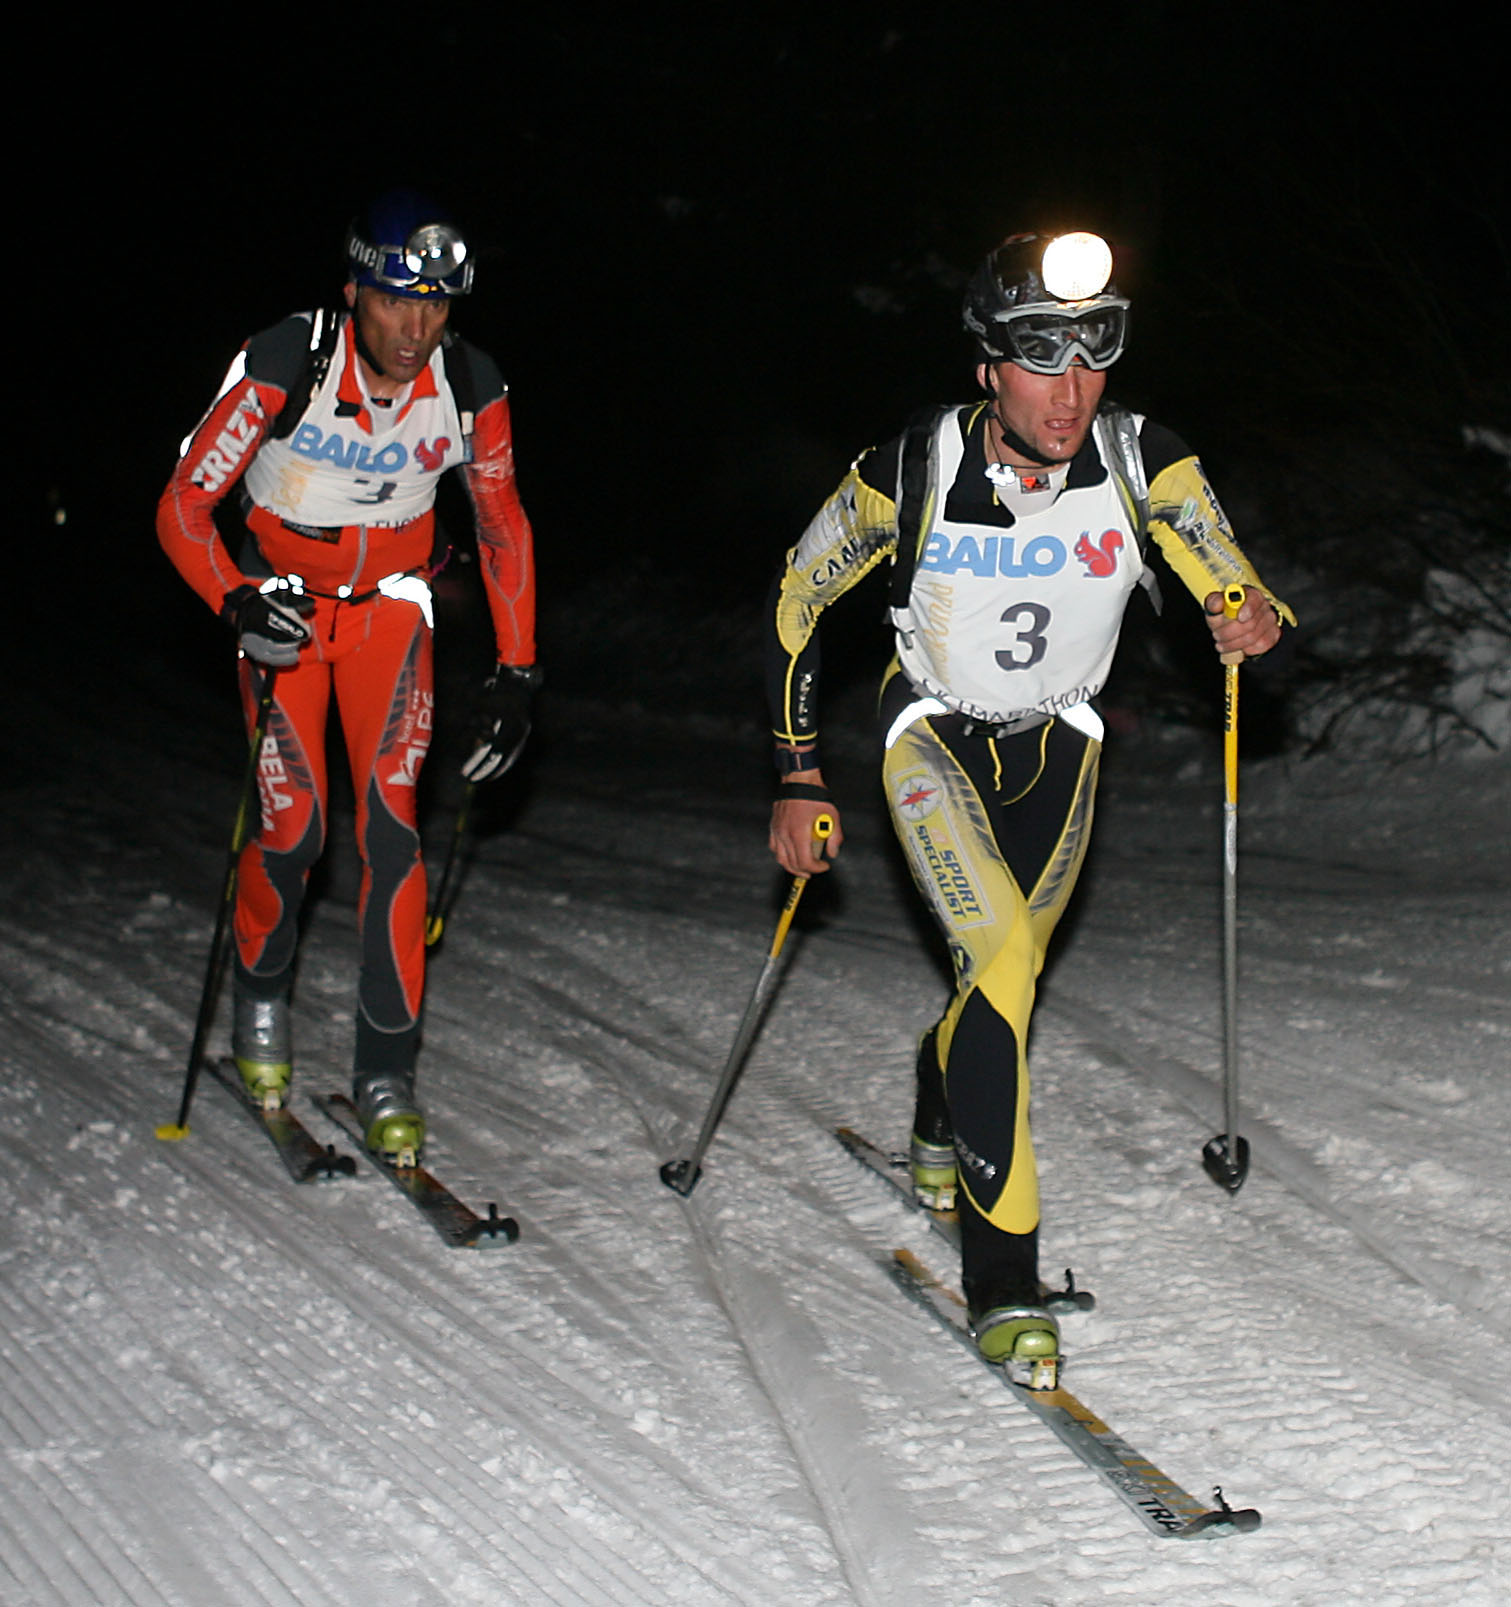 La Sellaronda Skimarathon 2010 in ricordo di Diego Perathoner